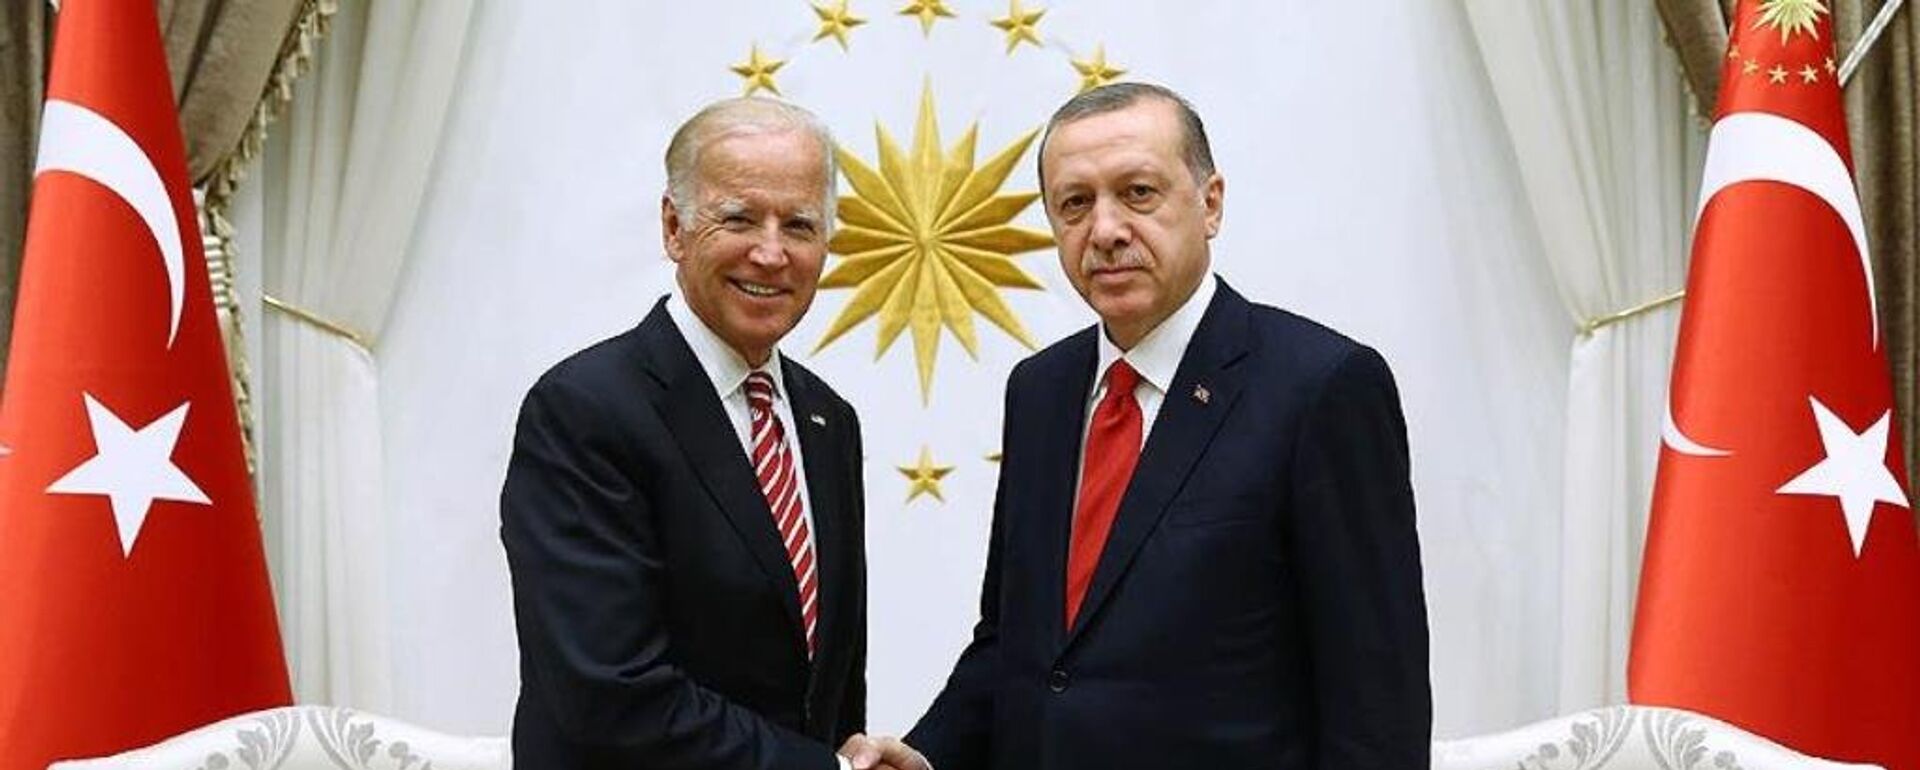 Joe Biden ve Recep Tayyip Erdoğan - Sputnik Türkiye, 1920, 03.06.2021